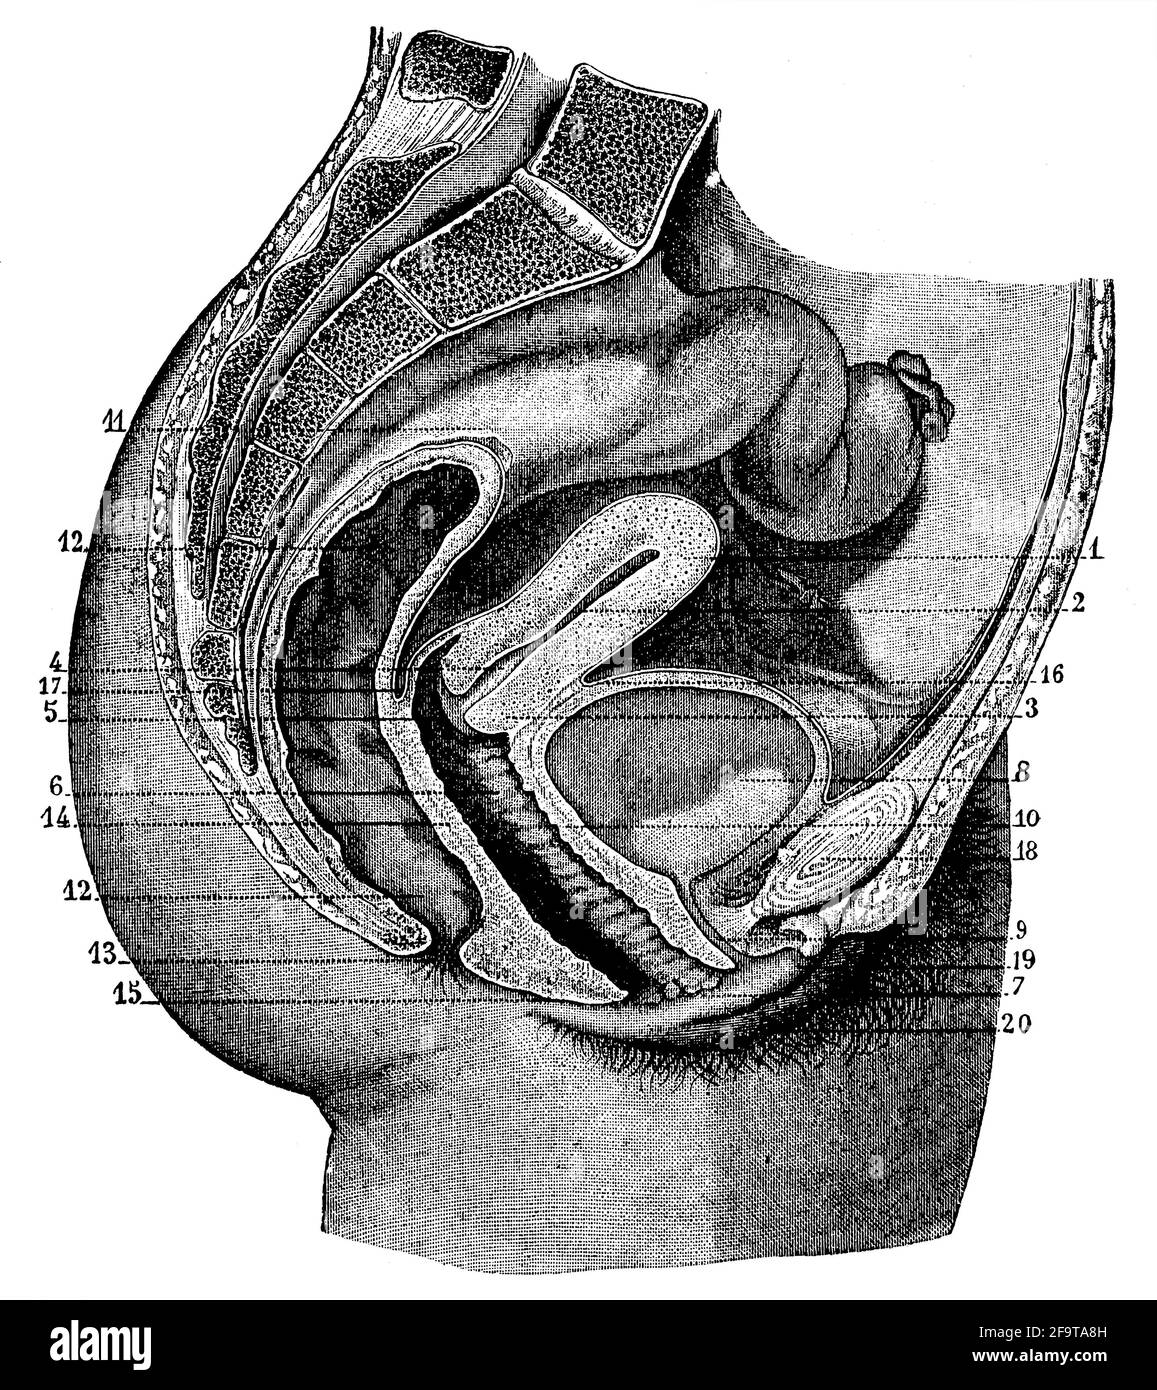 Le système reproducteur féminin (vue sagittale). Illustration du 19e siècle. Allemagne. Arrière-plan blanc. Banque D'Images